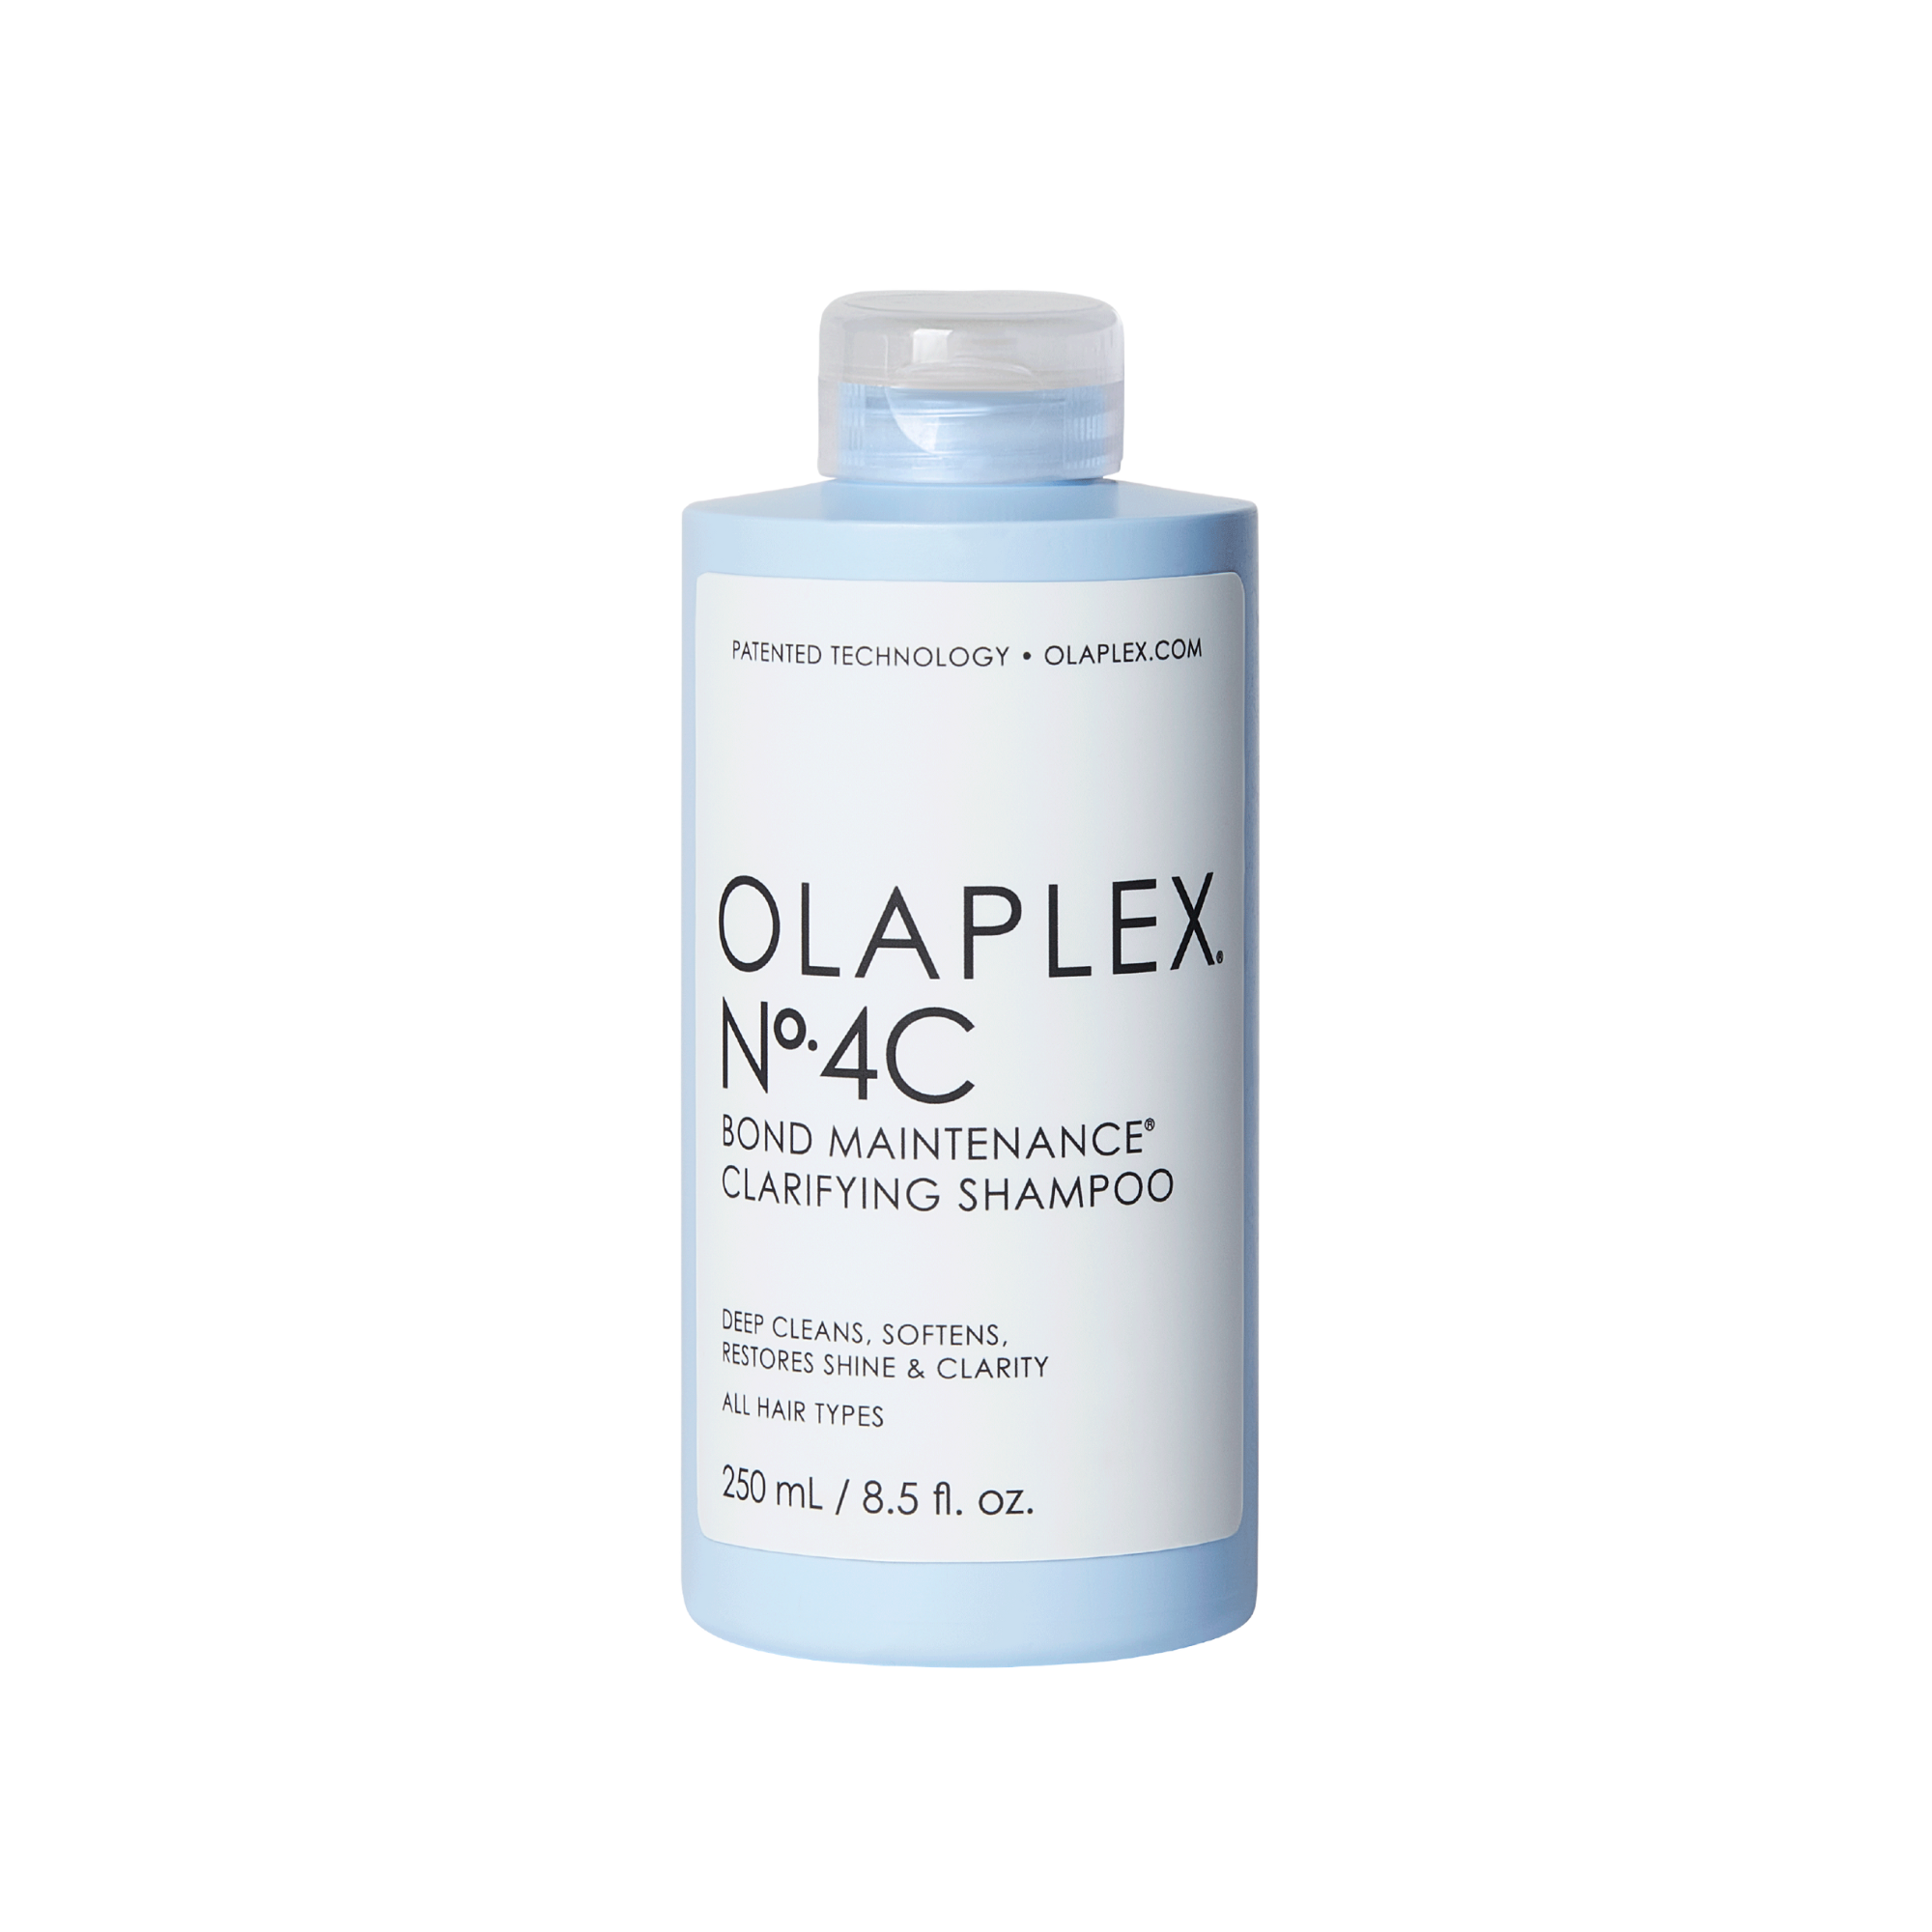 OLAPLEX® N°4C Clarifying Shampoo grid image